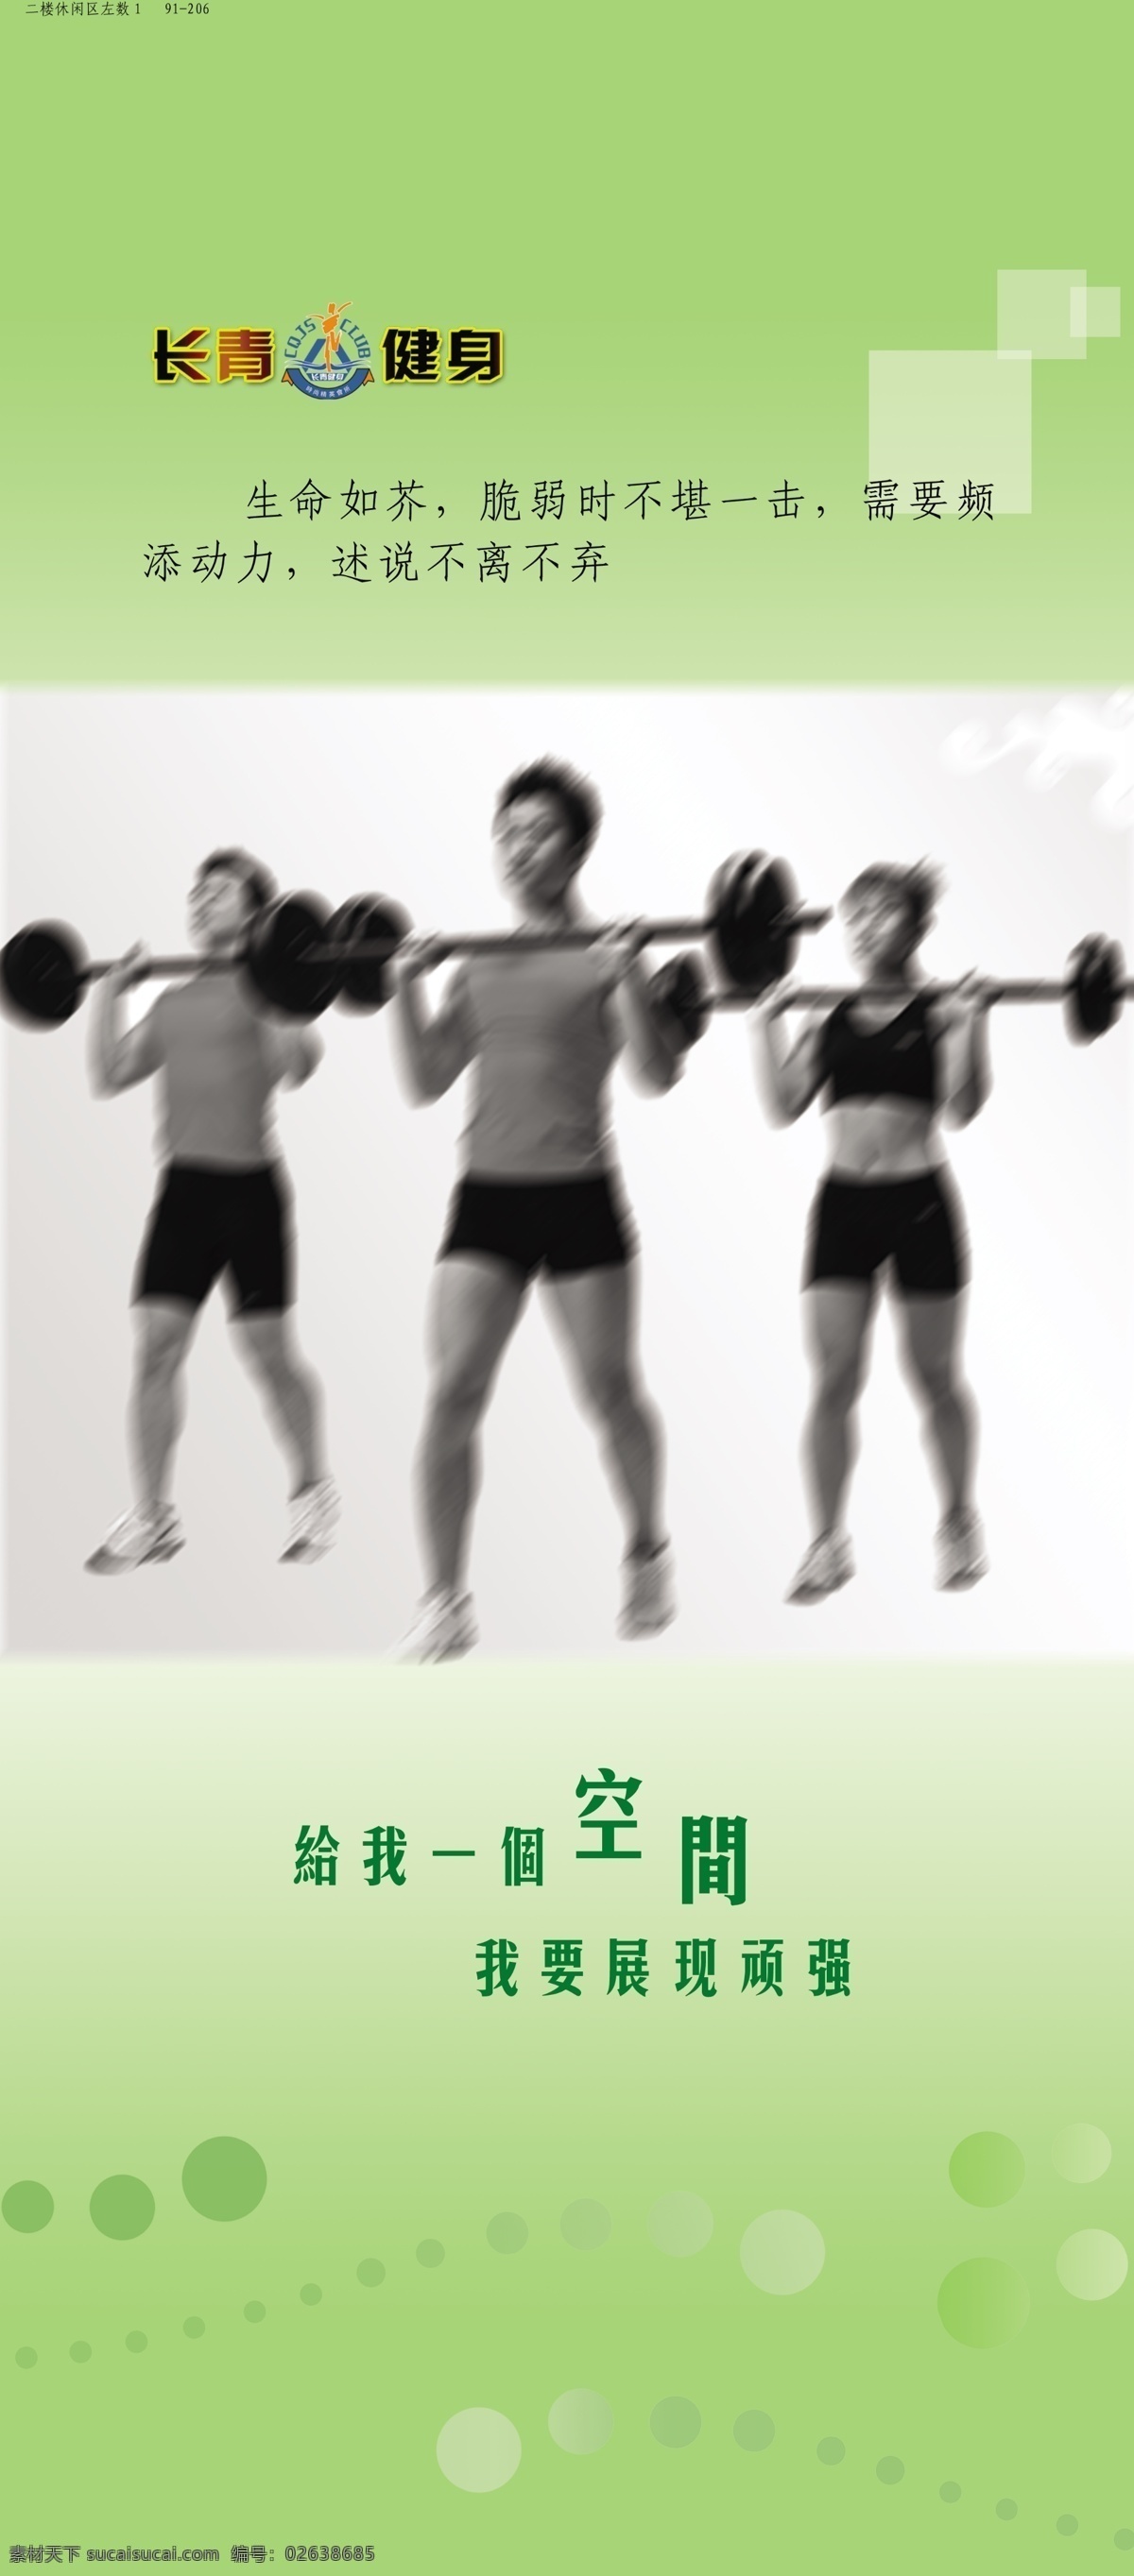 格言 广告设计模板 健身 健身房海报 健身房展板 时尚元素 源文件 杠铃运动展板 杠铃运动 展板模板 其他海报设计